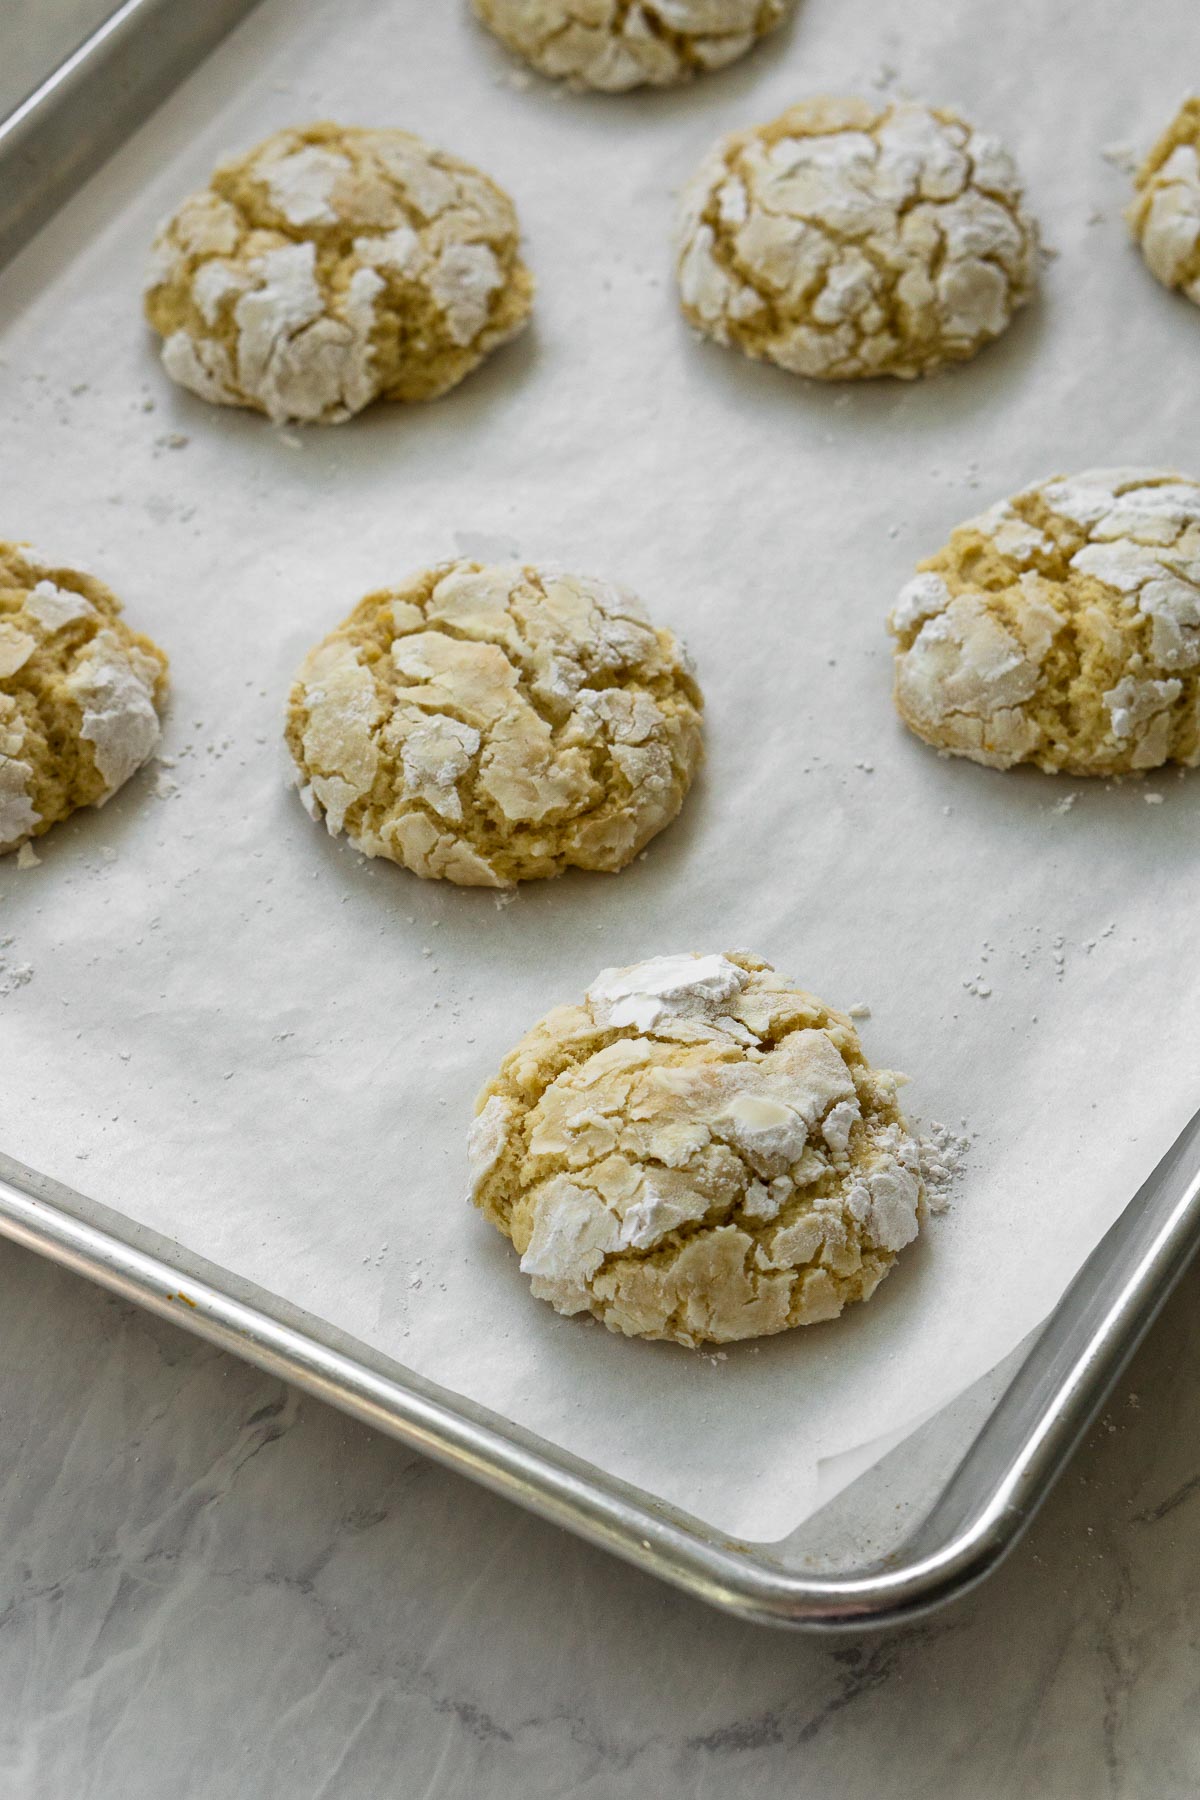 Process image 2 of 2 baking Meyer lemon cookies